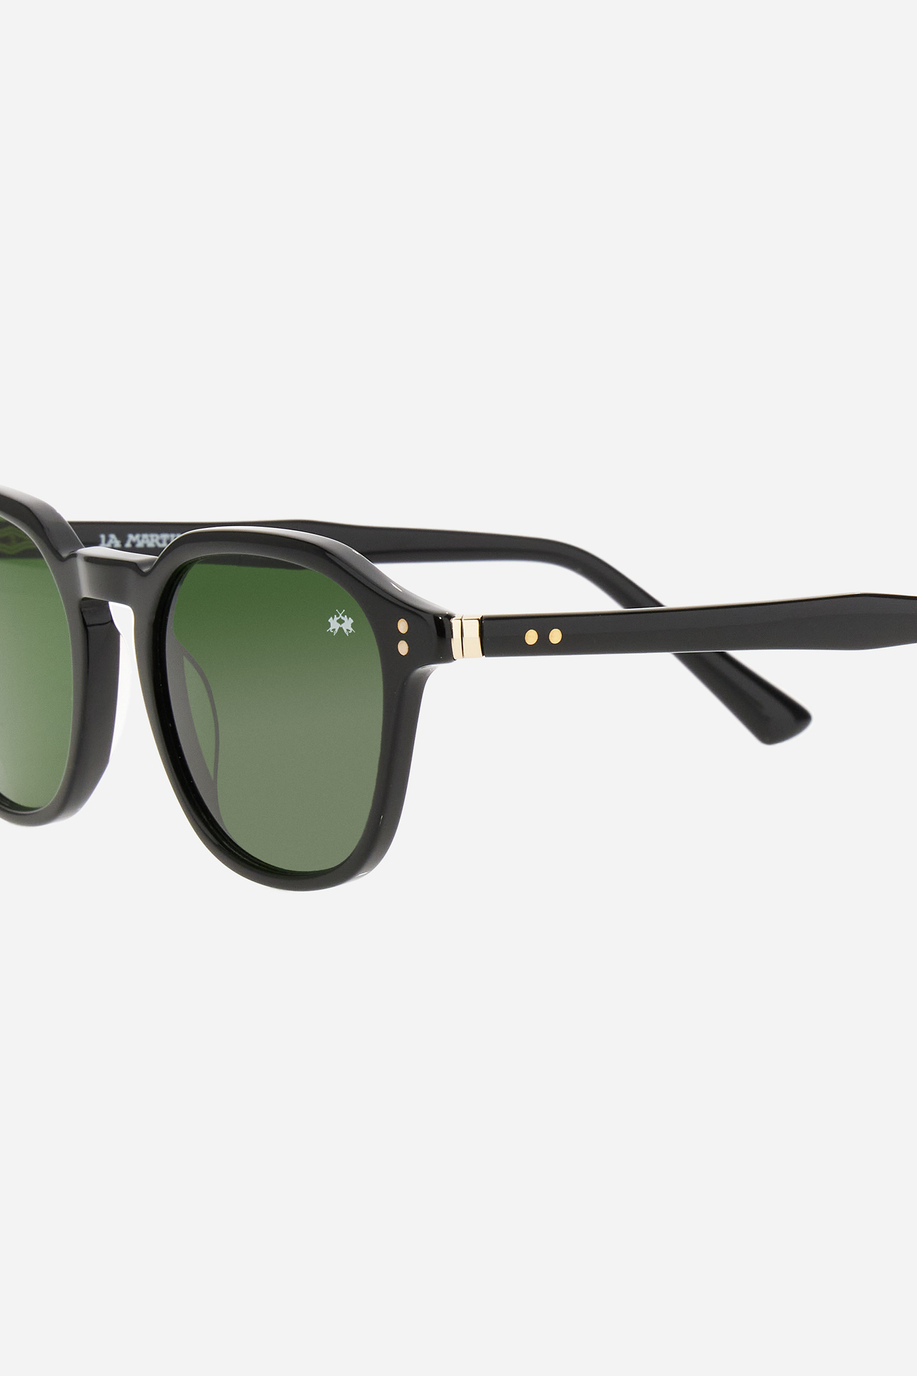 Drop-Sonnenbrille - Eleganter Look für ihn | La Martina - Official Online Shop